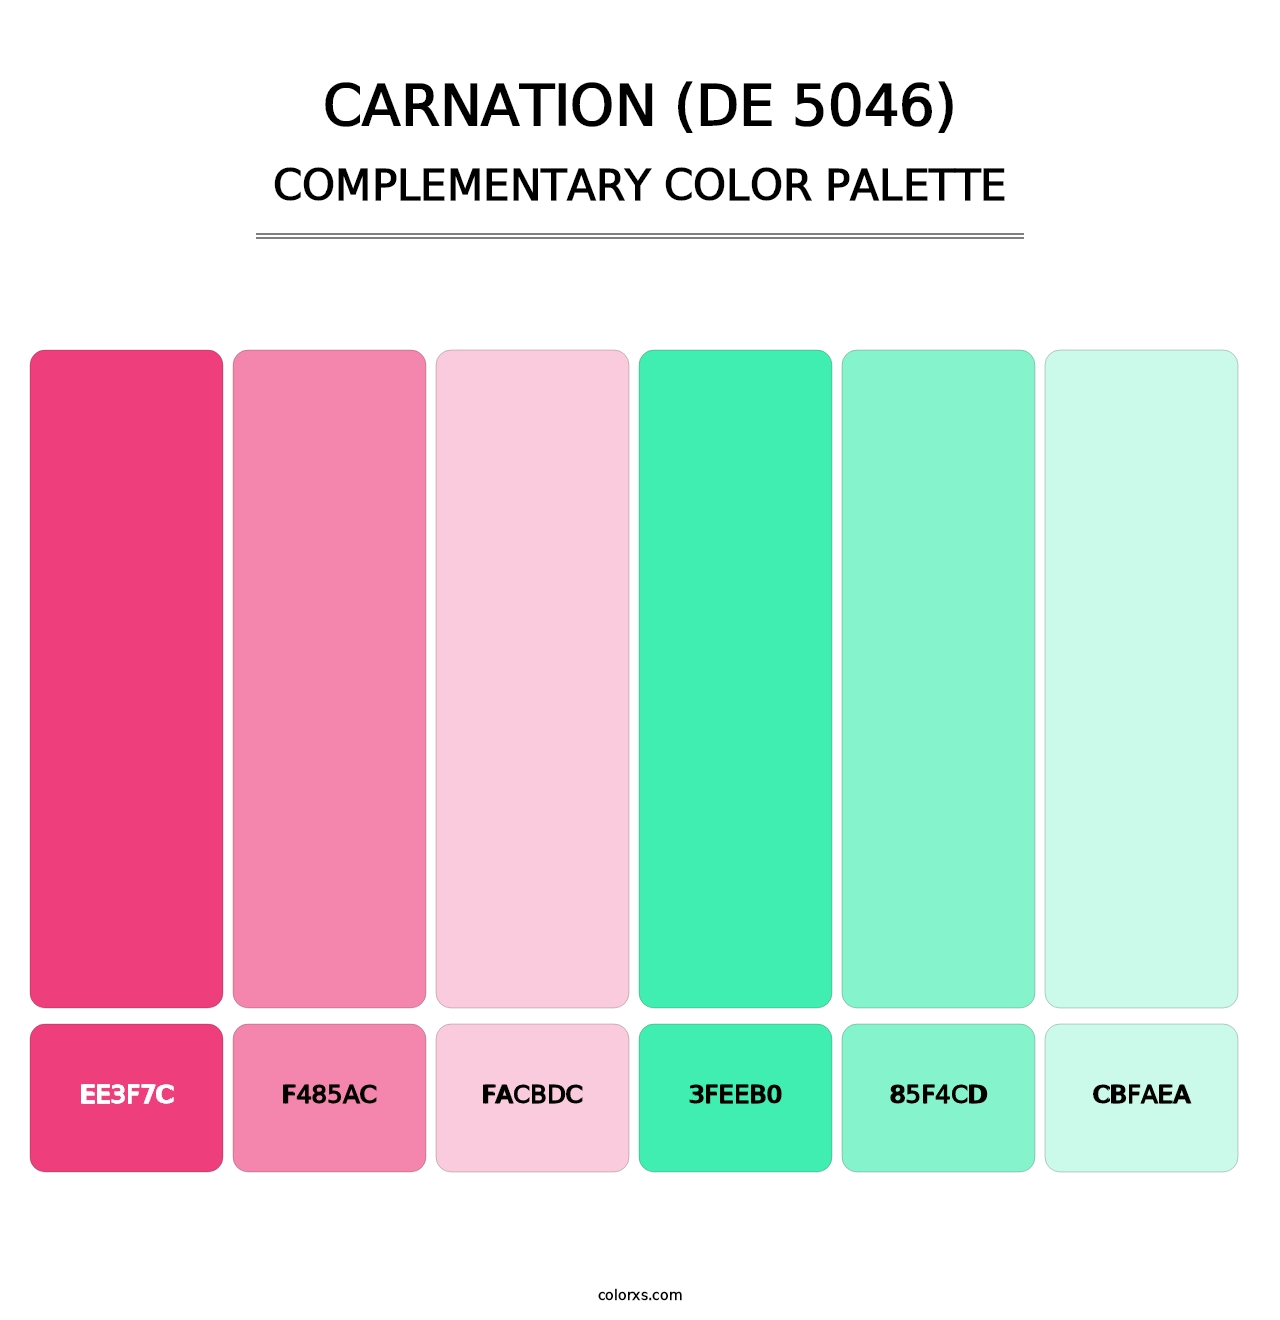 Carnation (DE 5046) - Complementary Color Palette